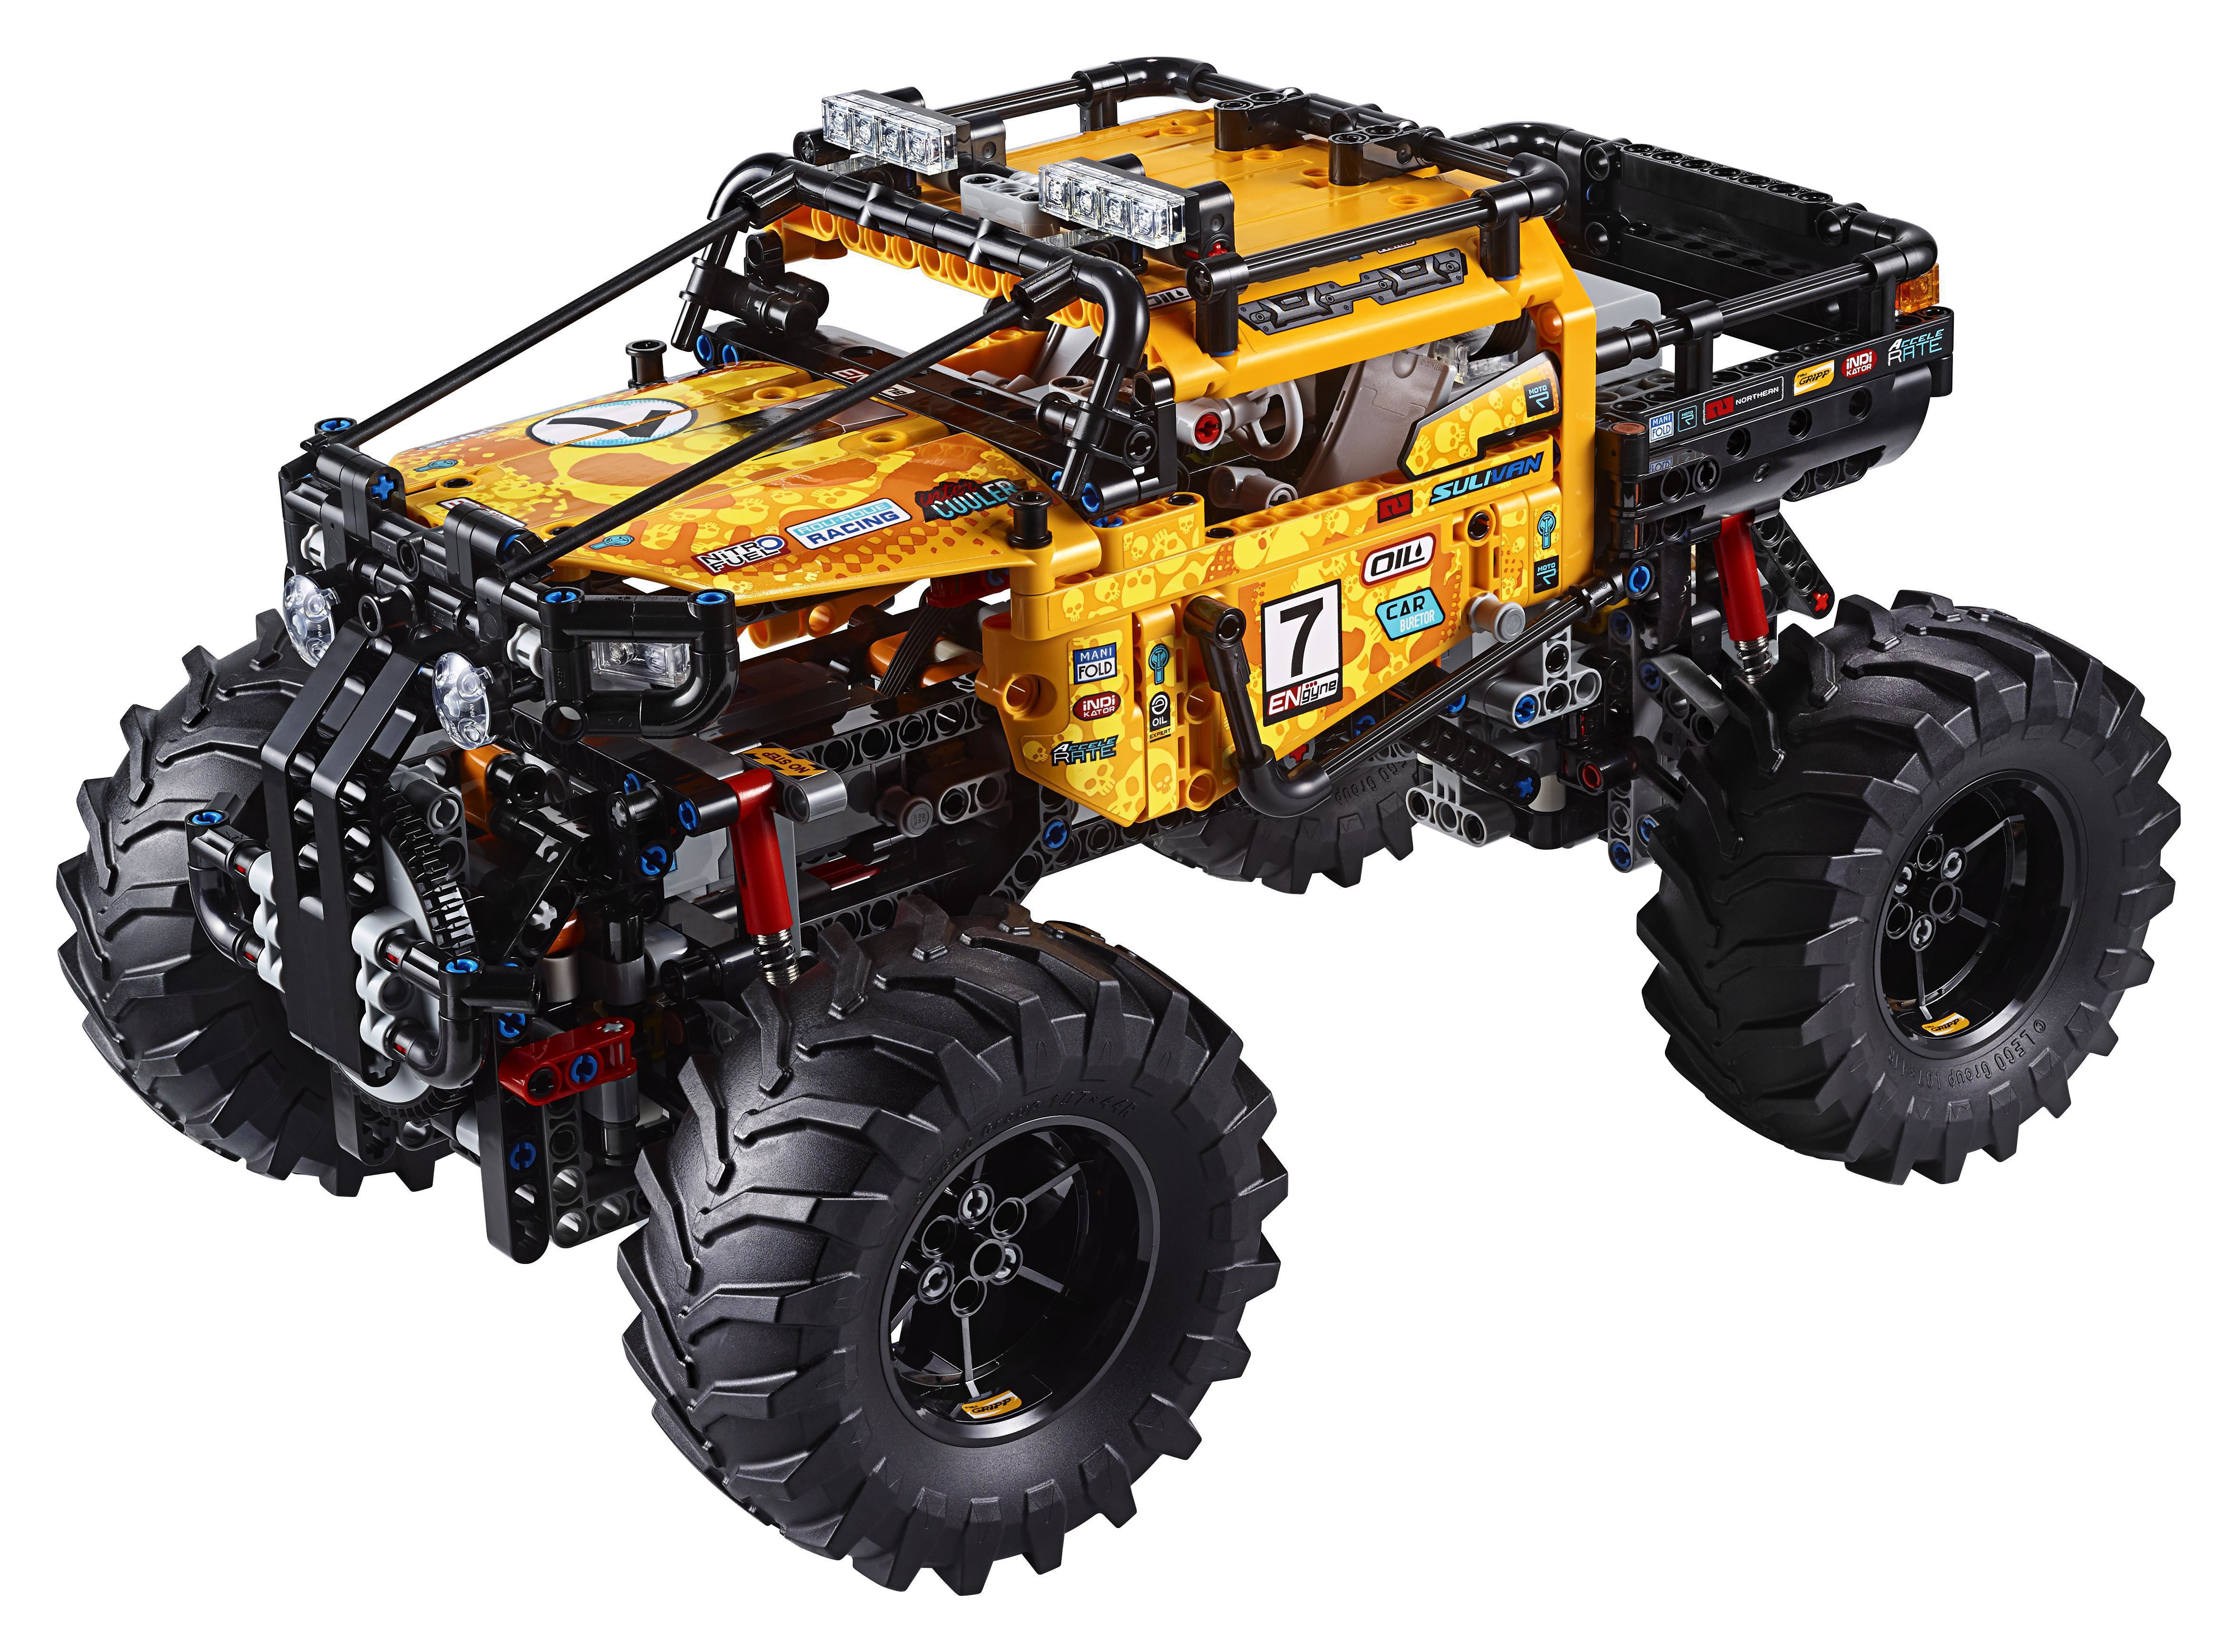 LEGO Technic Allrad Xtreme-Geländewagen